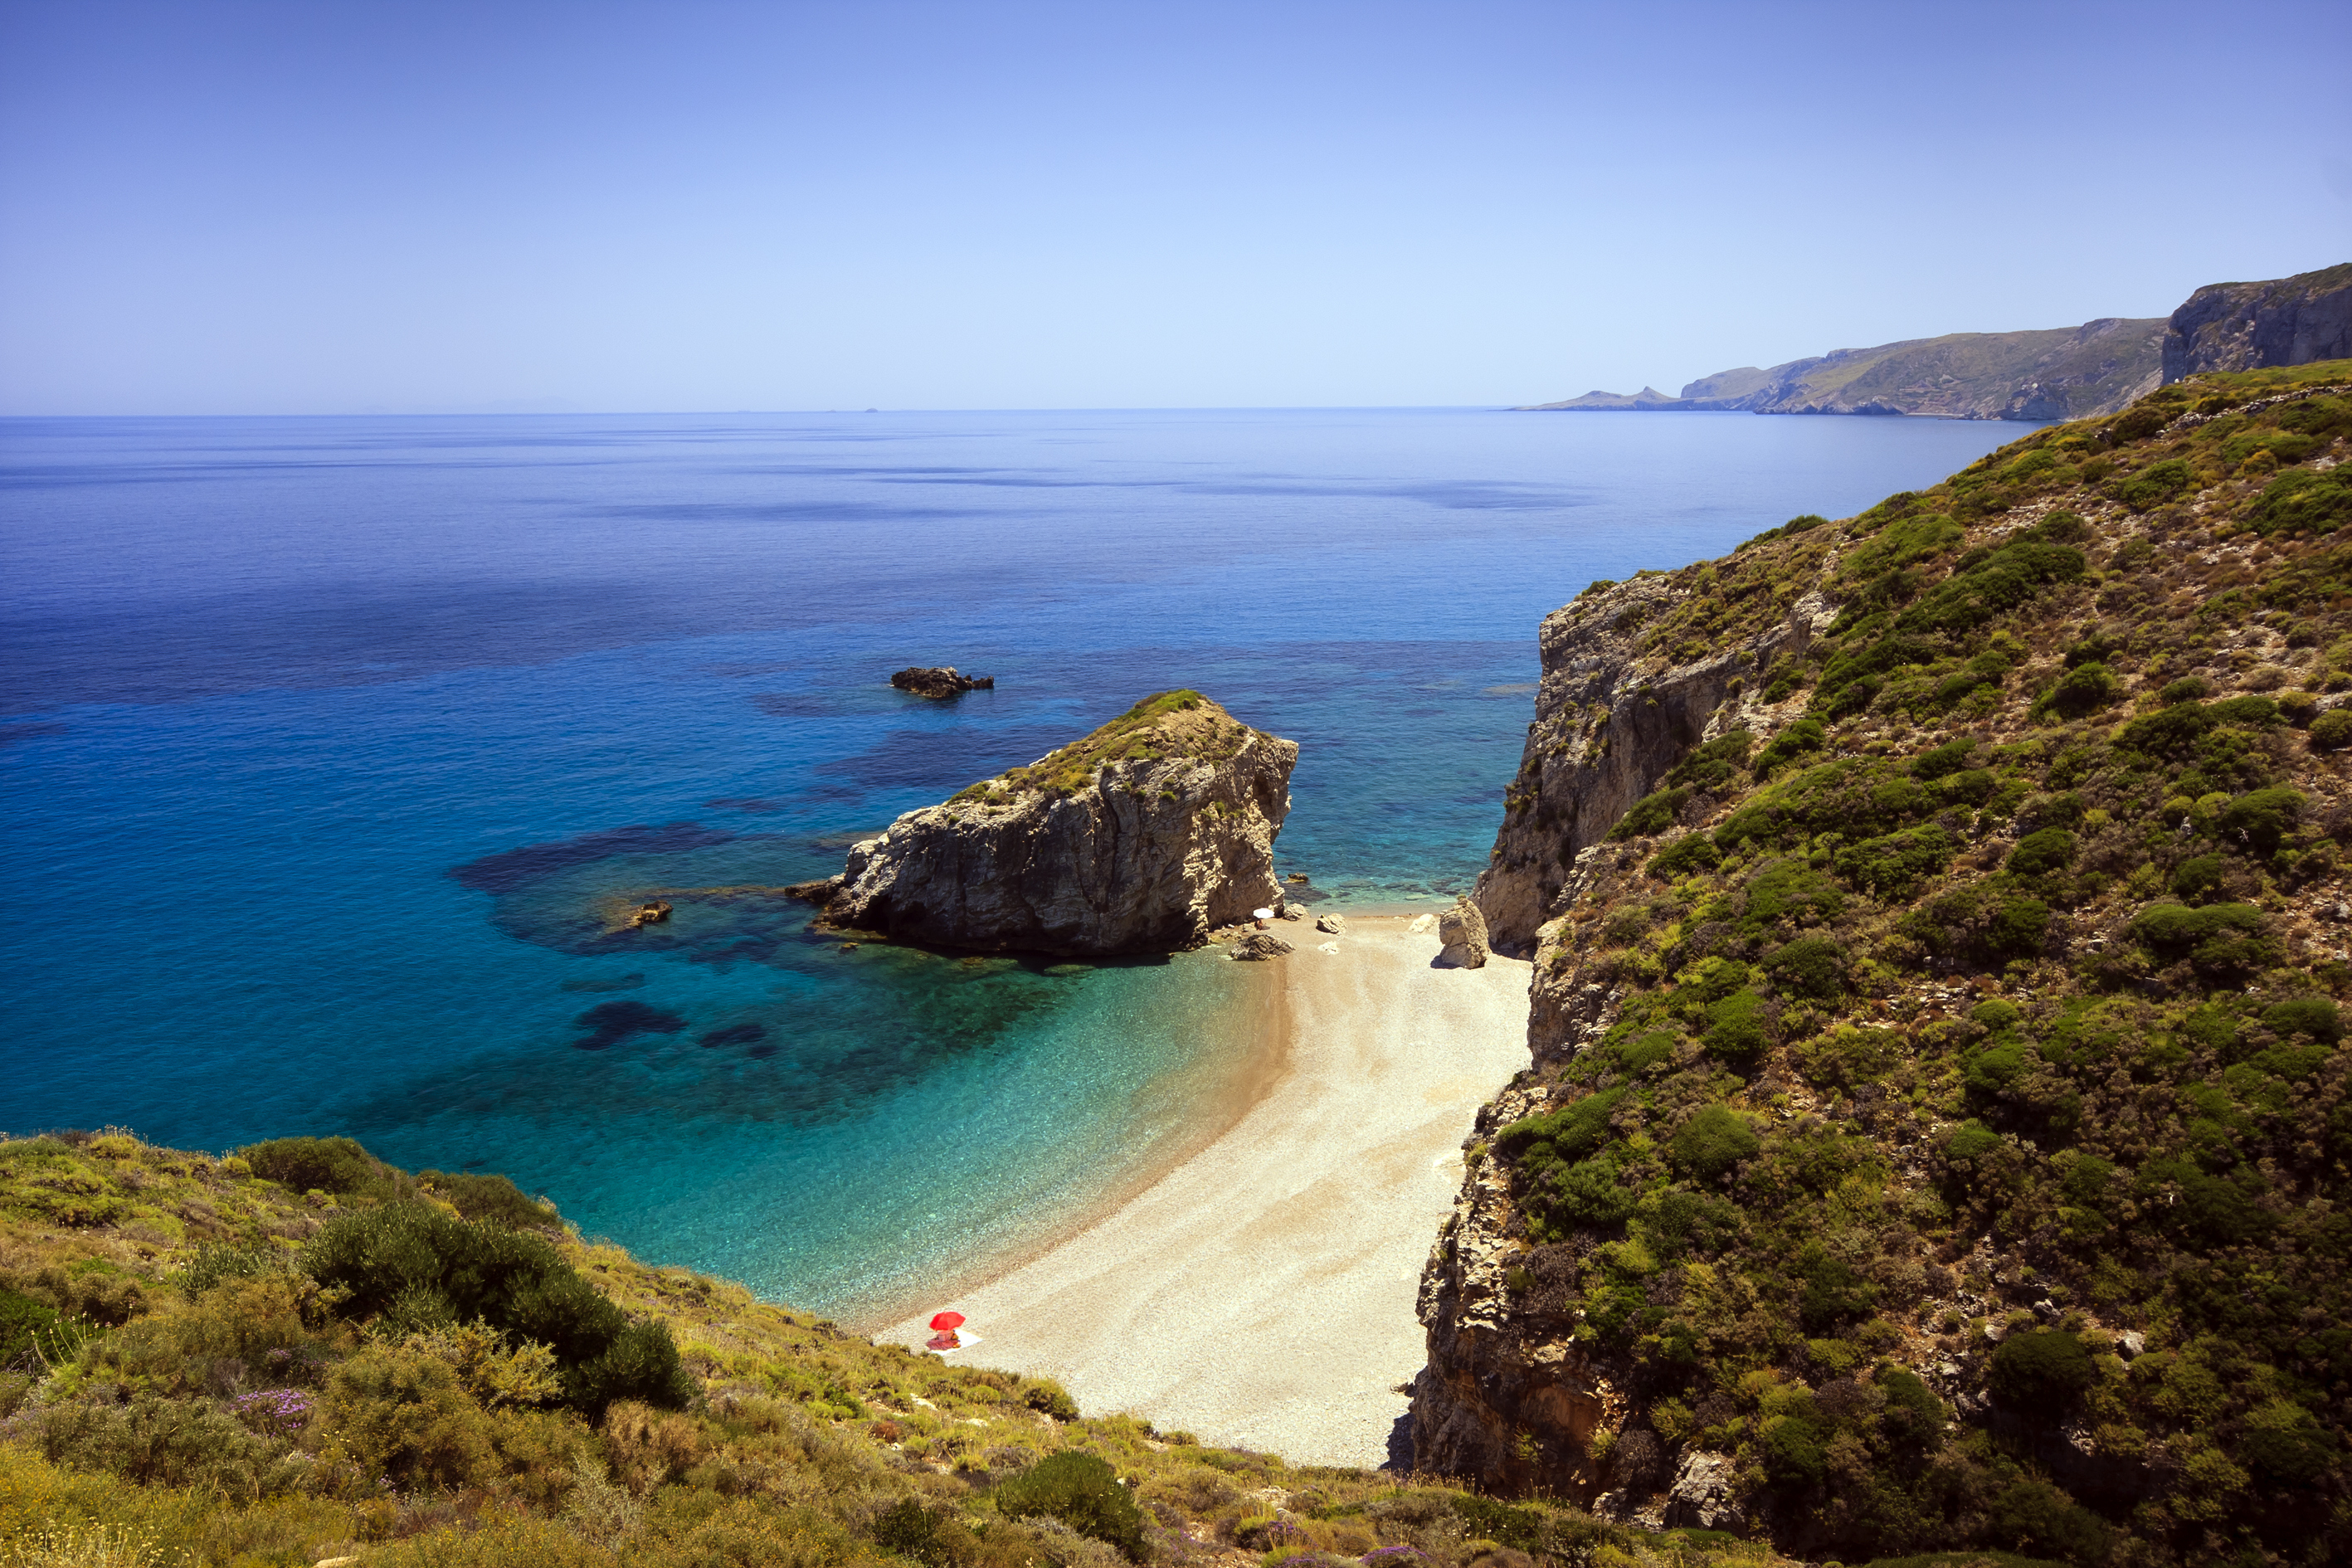 Οι 12 καλύτερες παραλίες στα Κύθηρα για το καλοκαίρι! | Skyscanner Greece